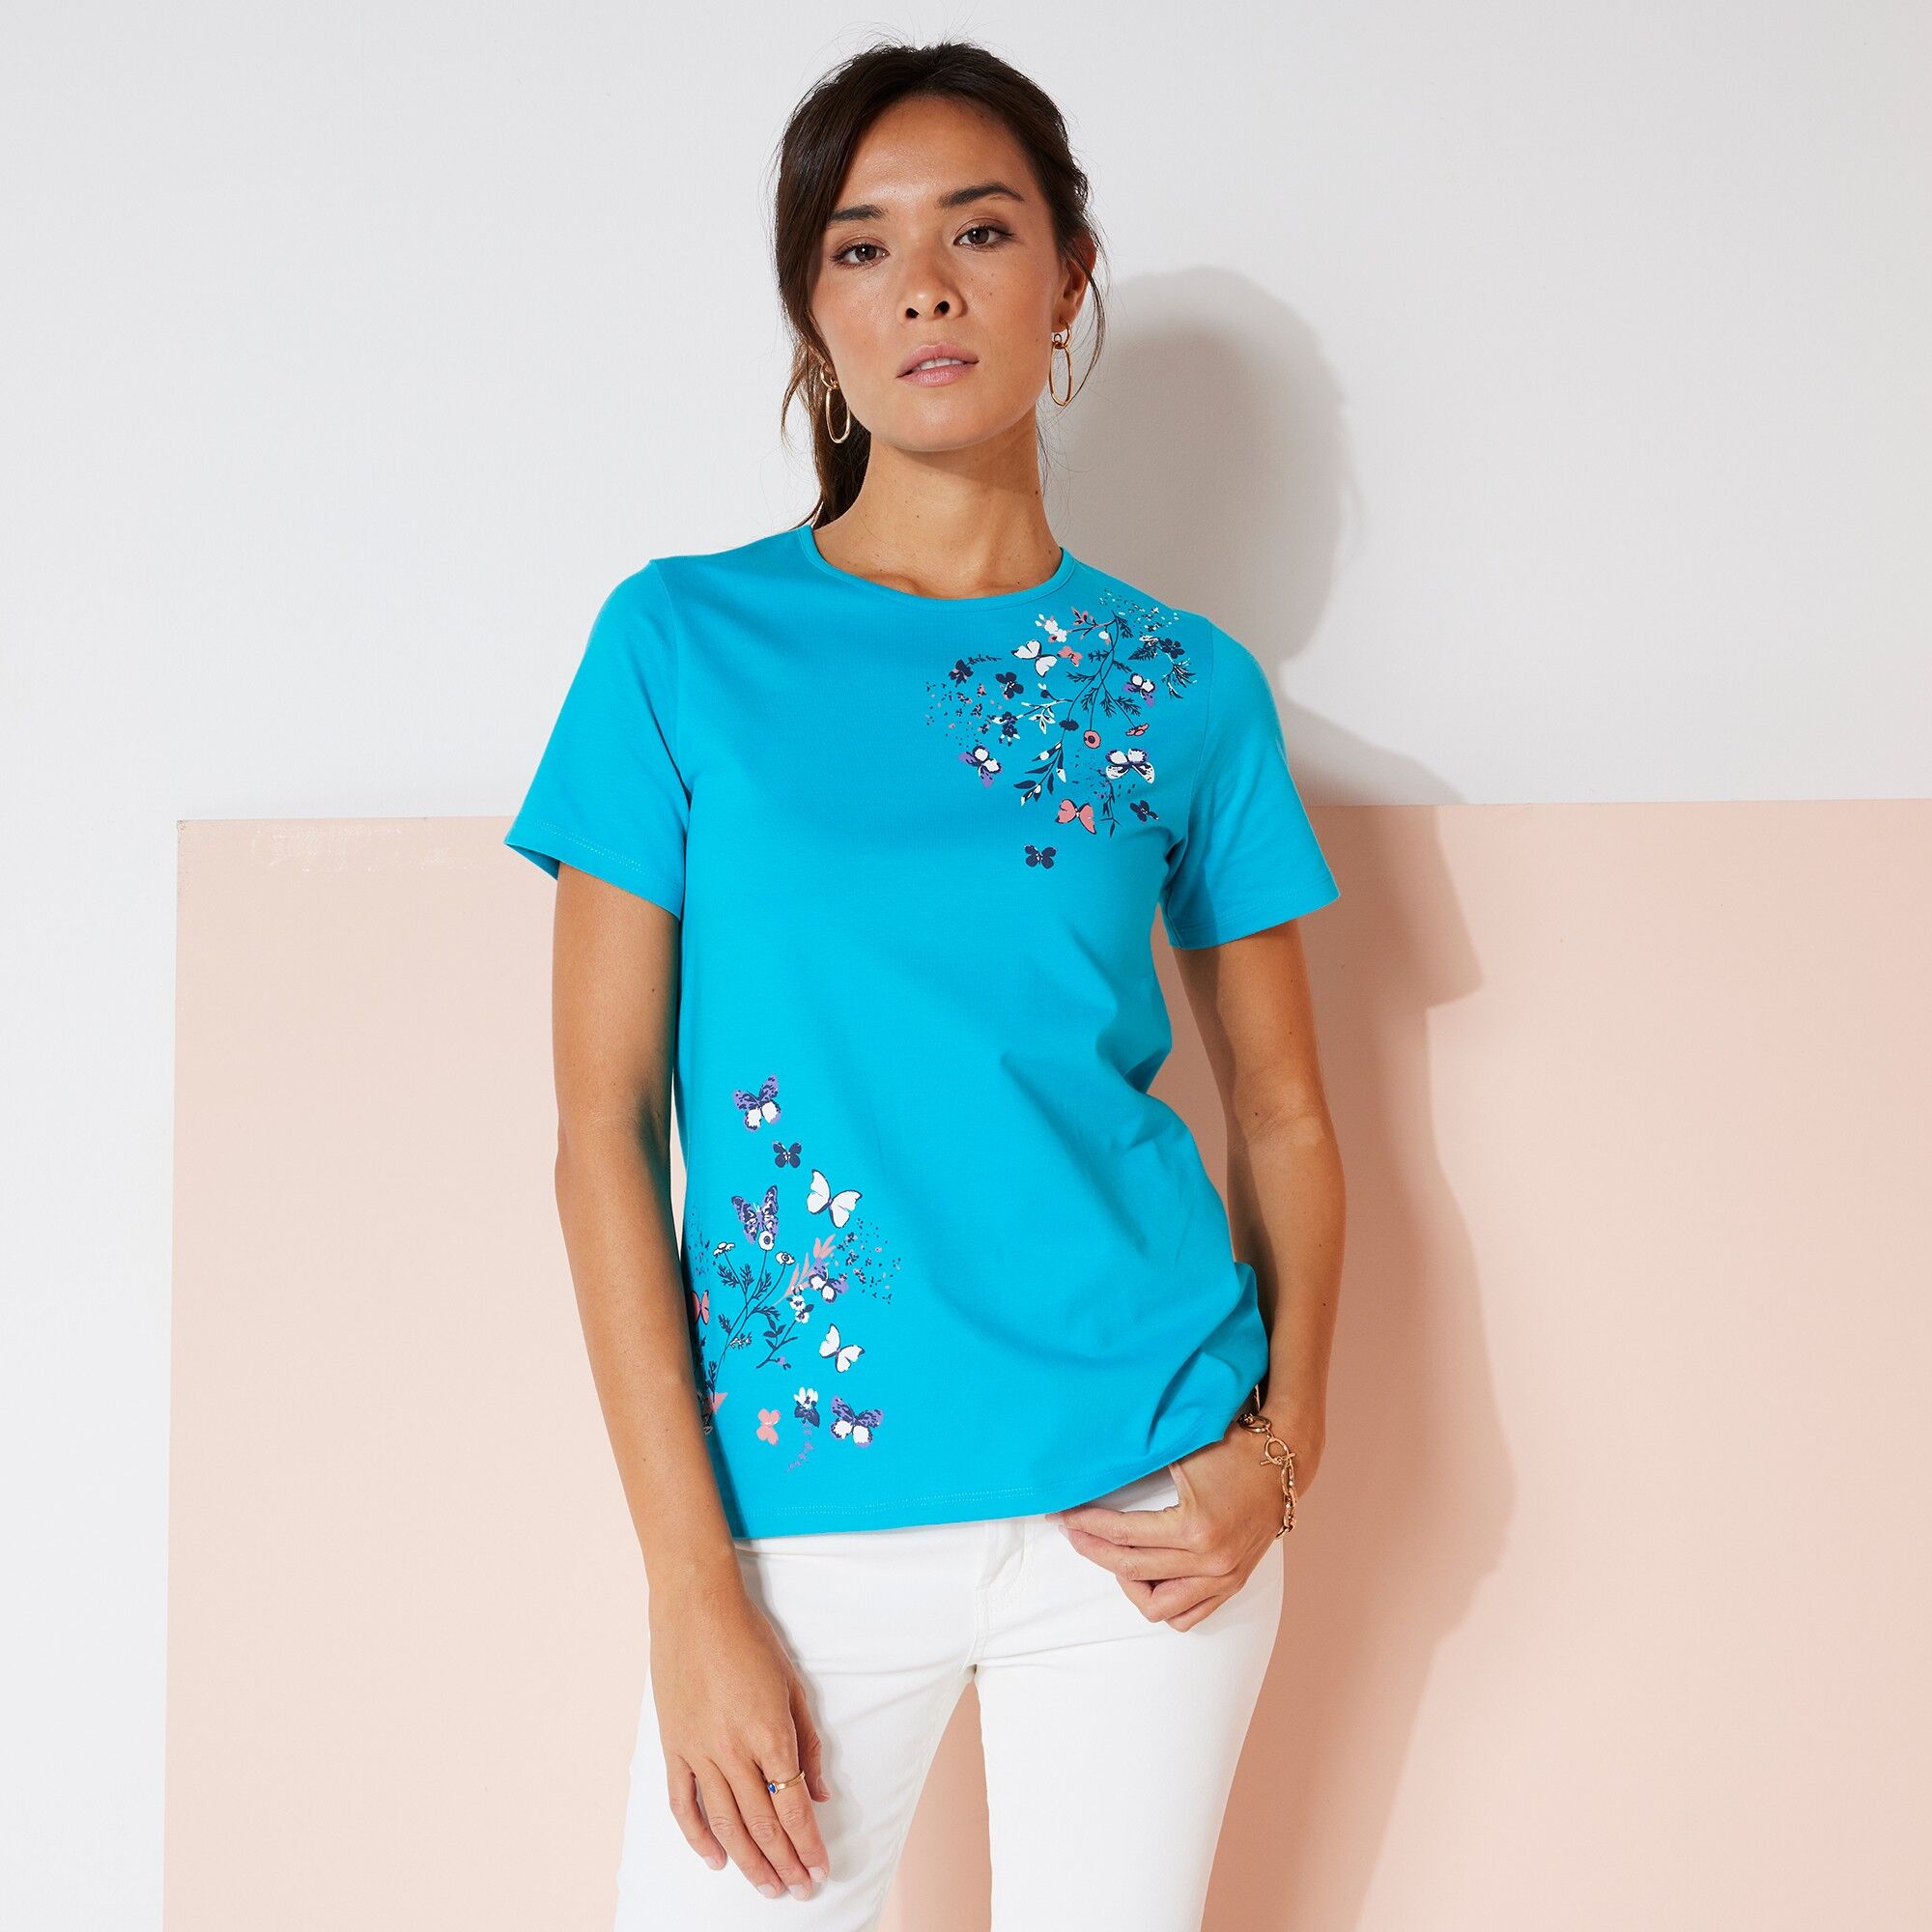 Blancheporte T-shirt Manches Courtes Imprimé Papillon - Femme Turquoise 42/44